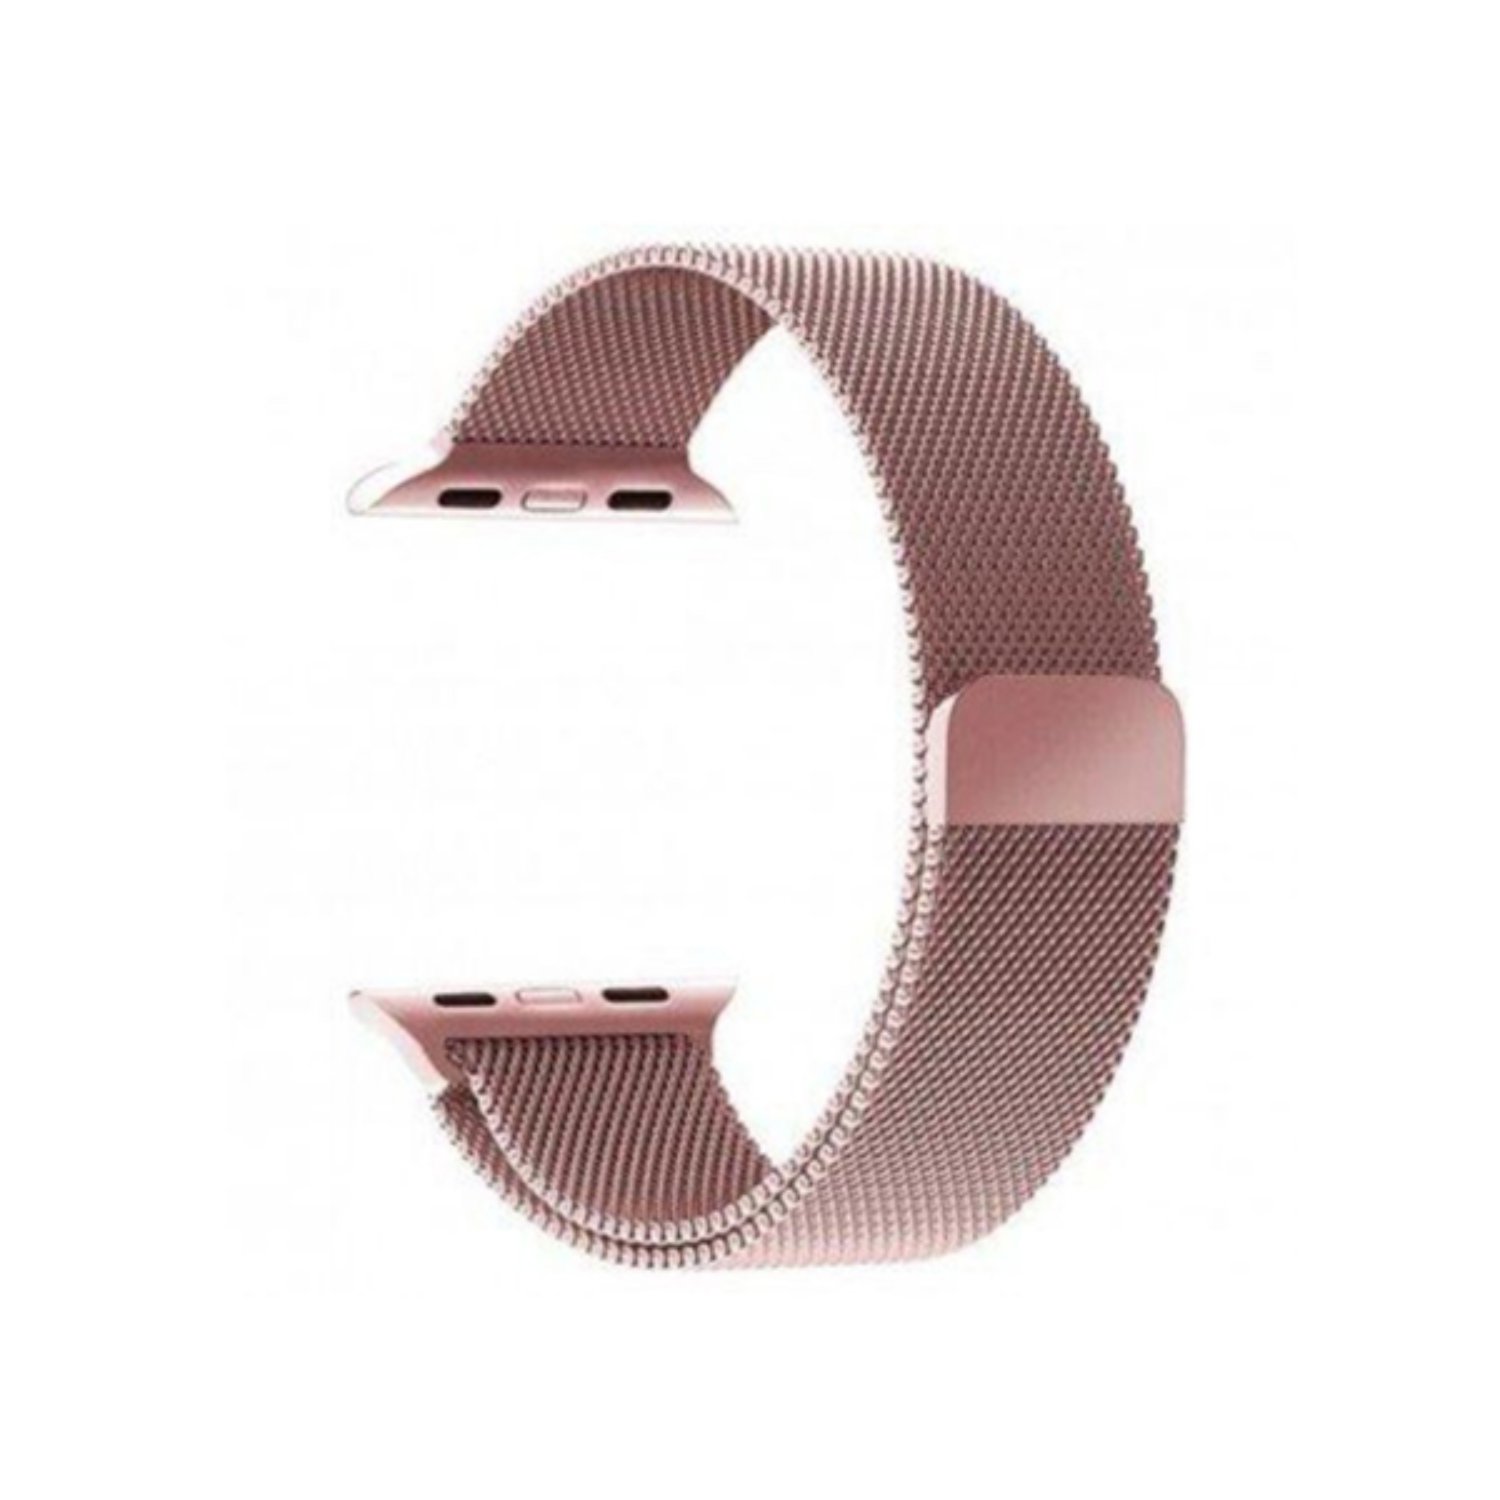 بند فلزی مدل Milanese Loop مناسب برای اپل واچ 42 میلی متری